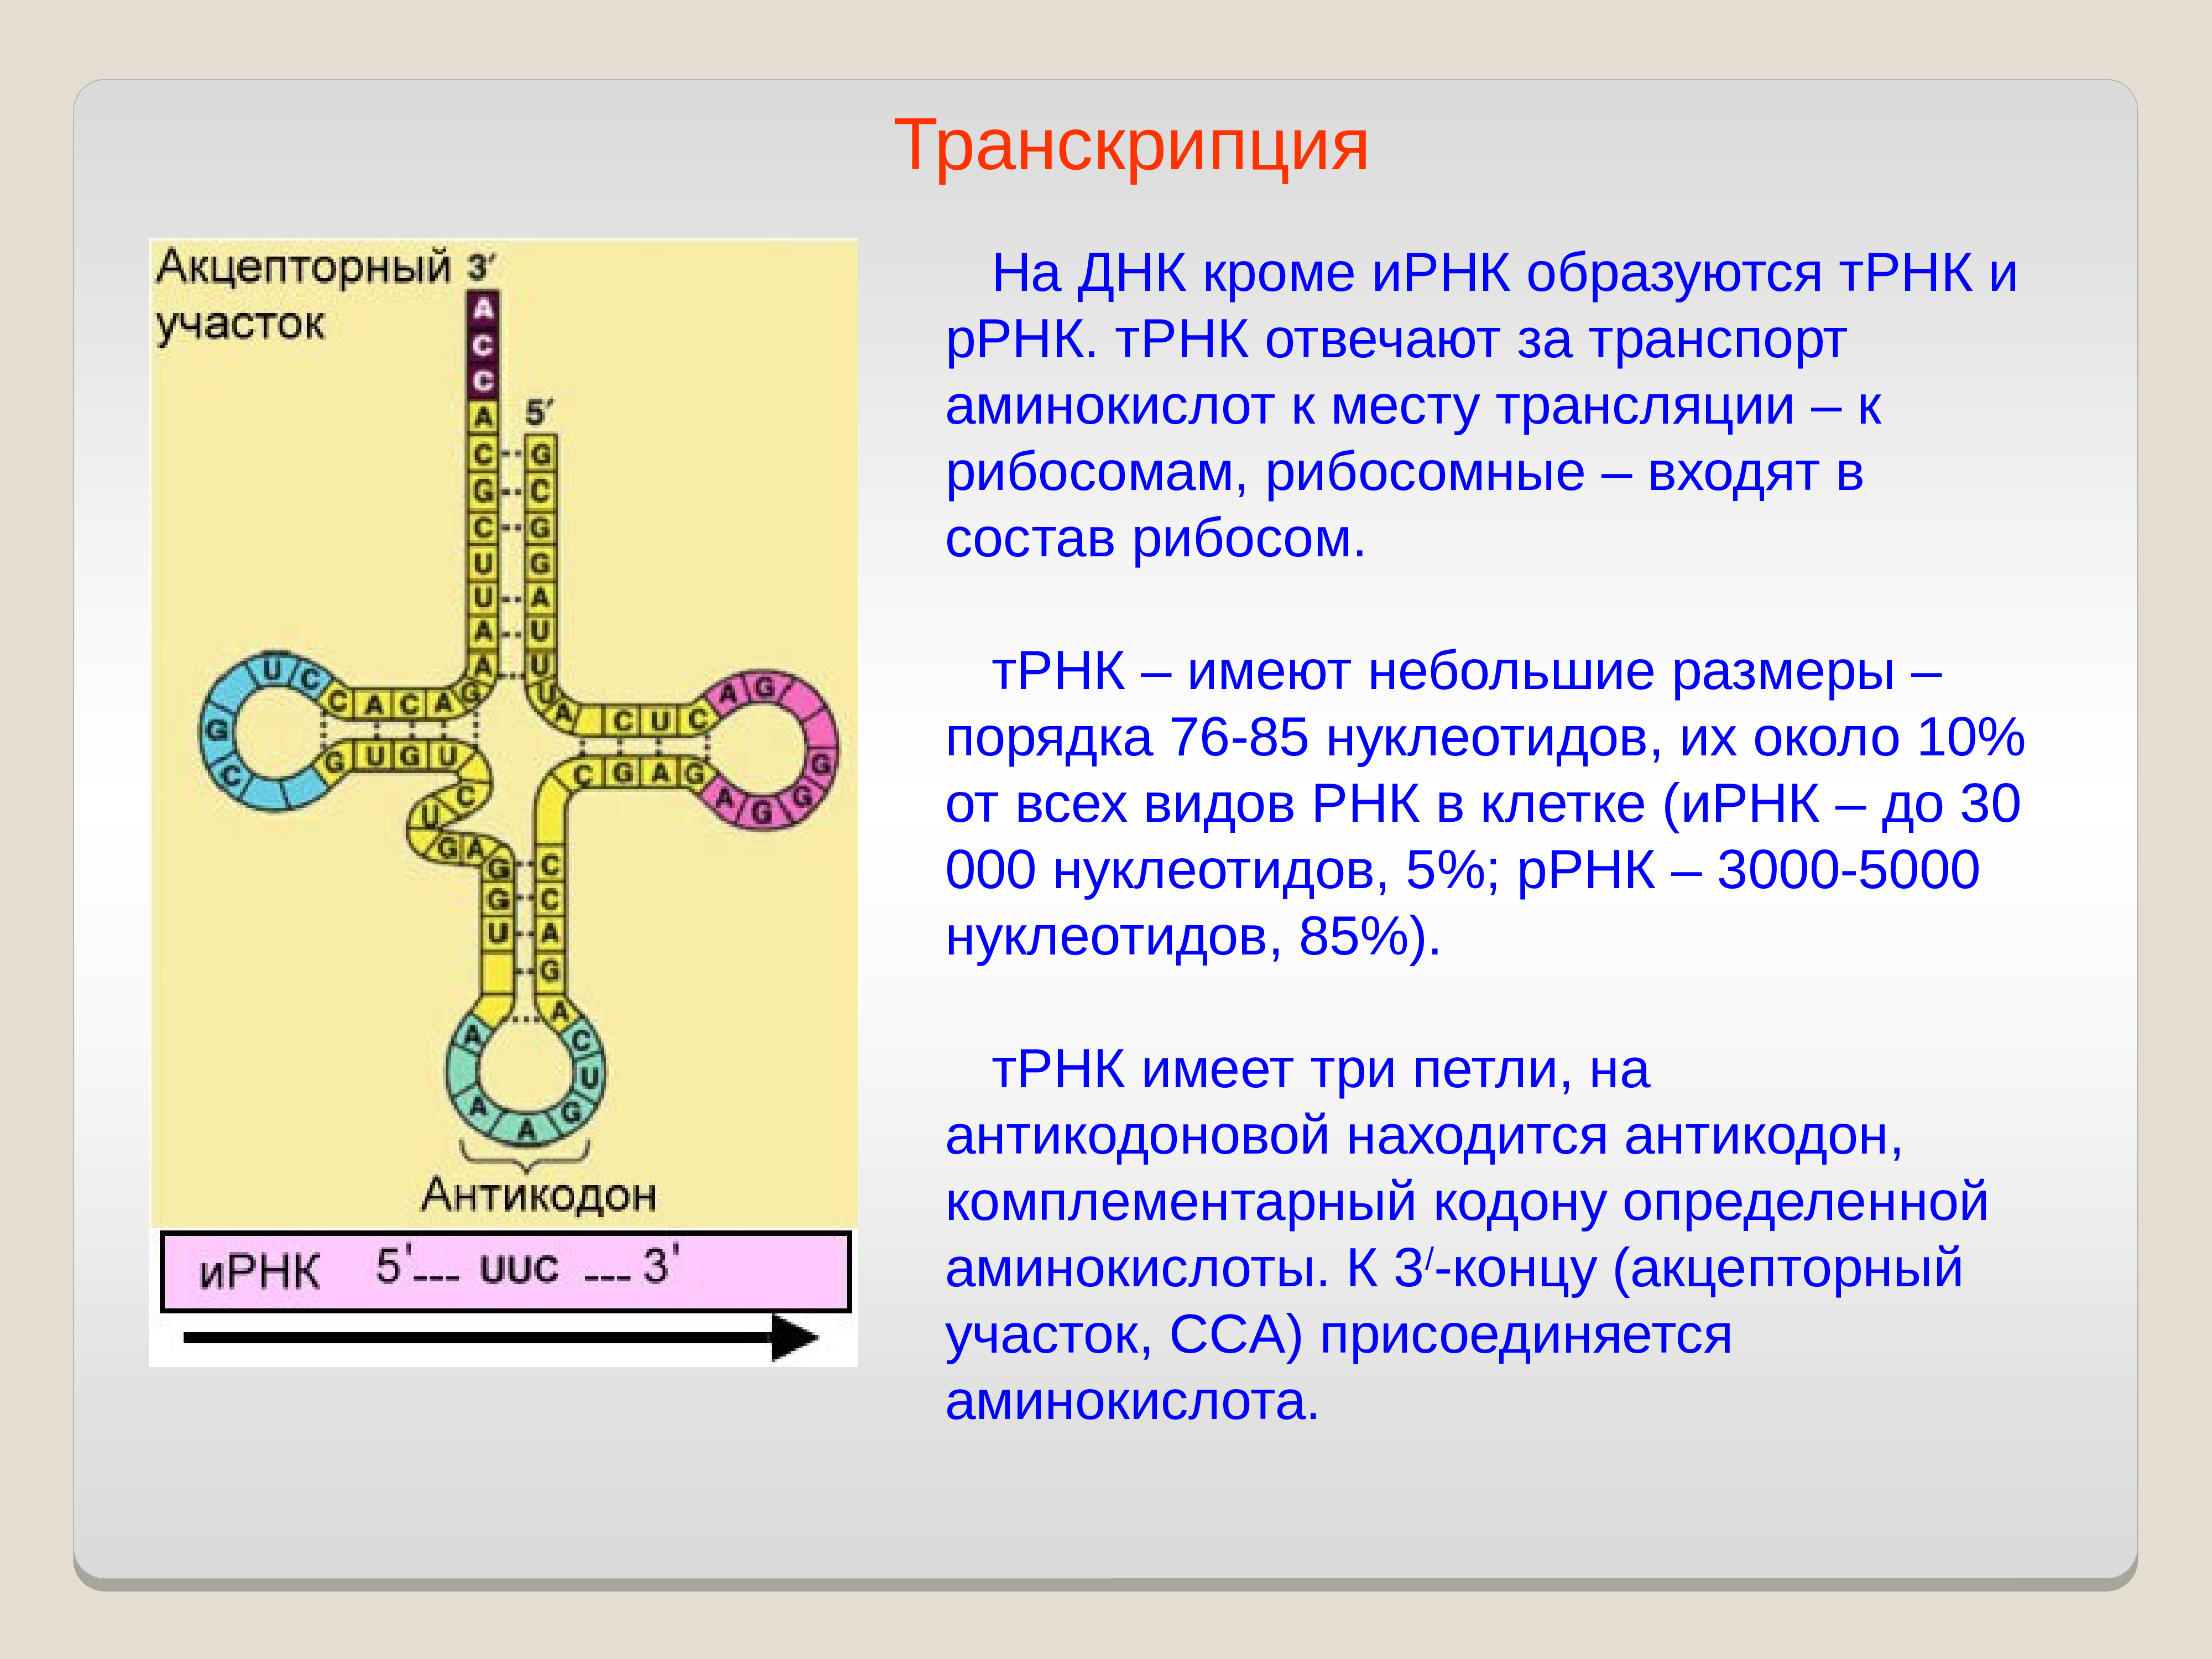 Т рнк это белок. ДНК РНК ТРНК. ДНК В Т РНК. Строение ТРНК. ТРНК И ИРНК.